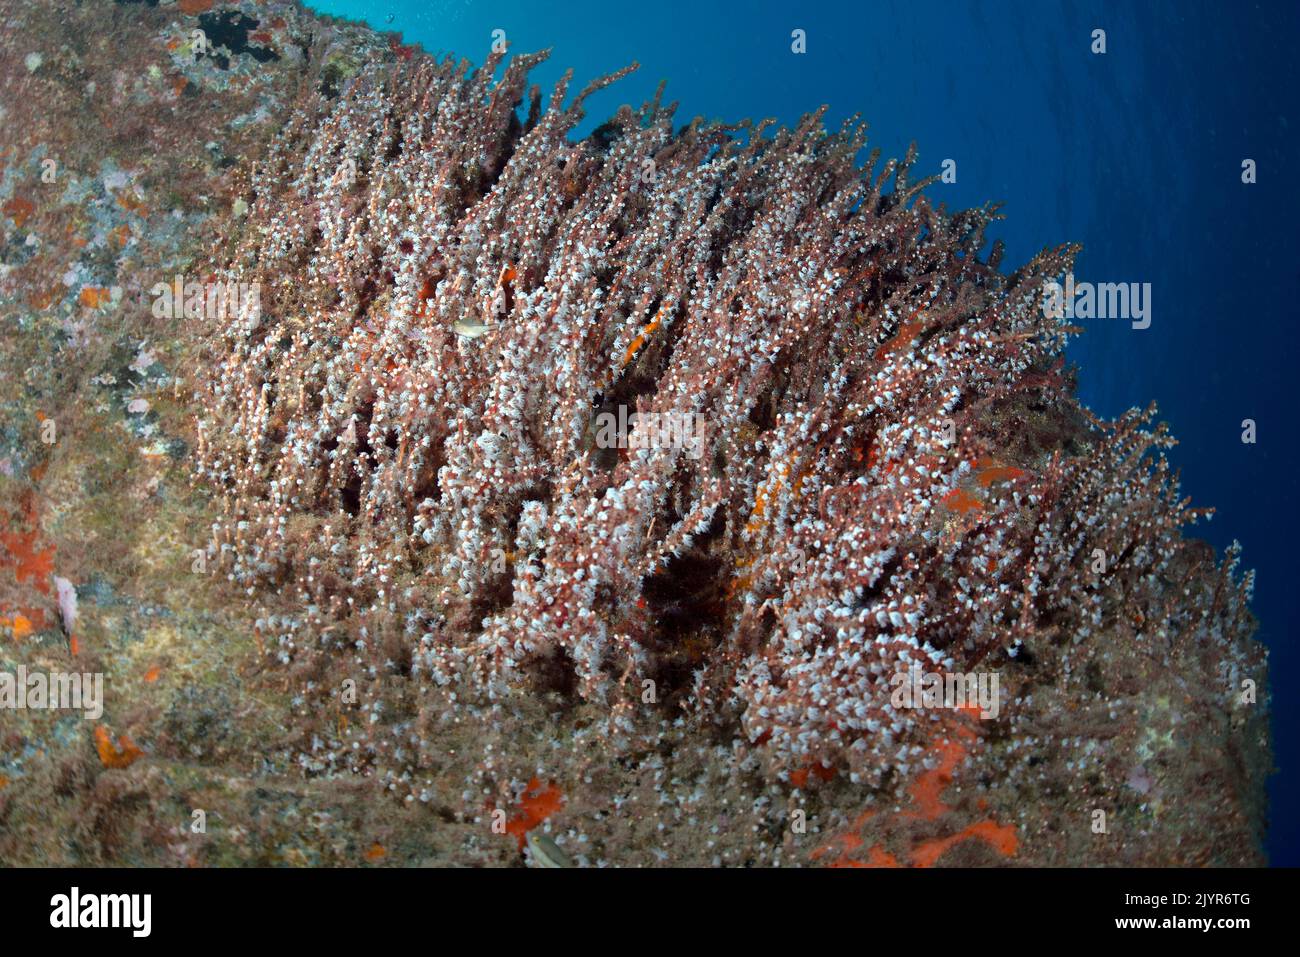 Coral copo de nieve (Carijoa riisei). Este coral se observa cada vez con más frecuencia en las aguas del archipiélago canario, incluso siendo considerado por algunos expertos como una especie invasora. Invertebrados marinos de las Islas Canarias. Foto de stock